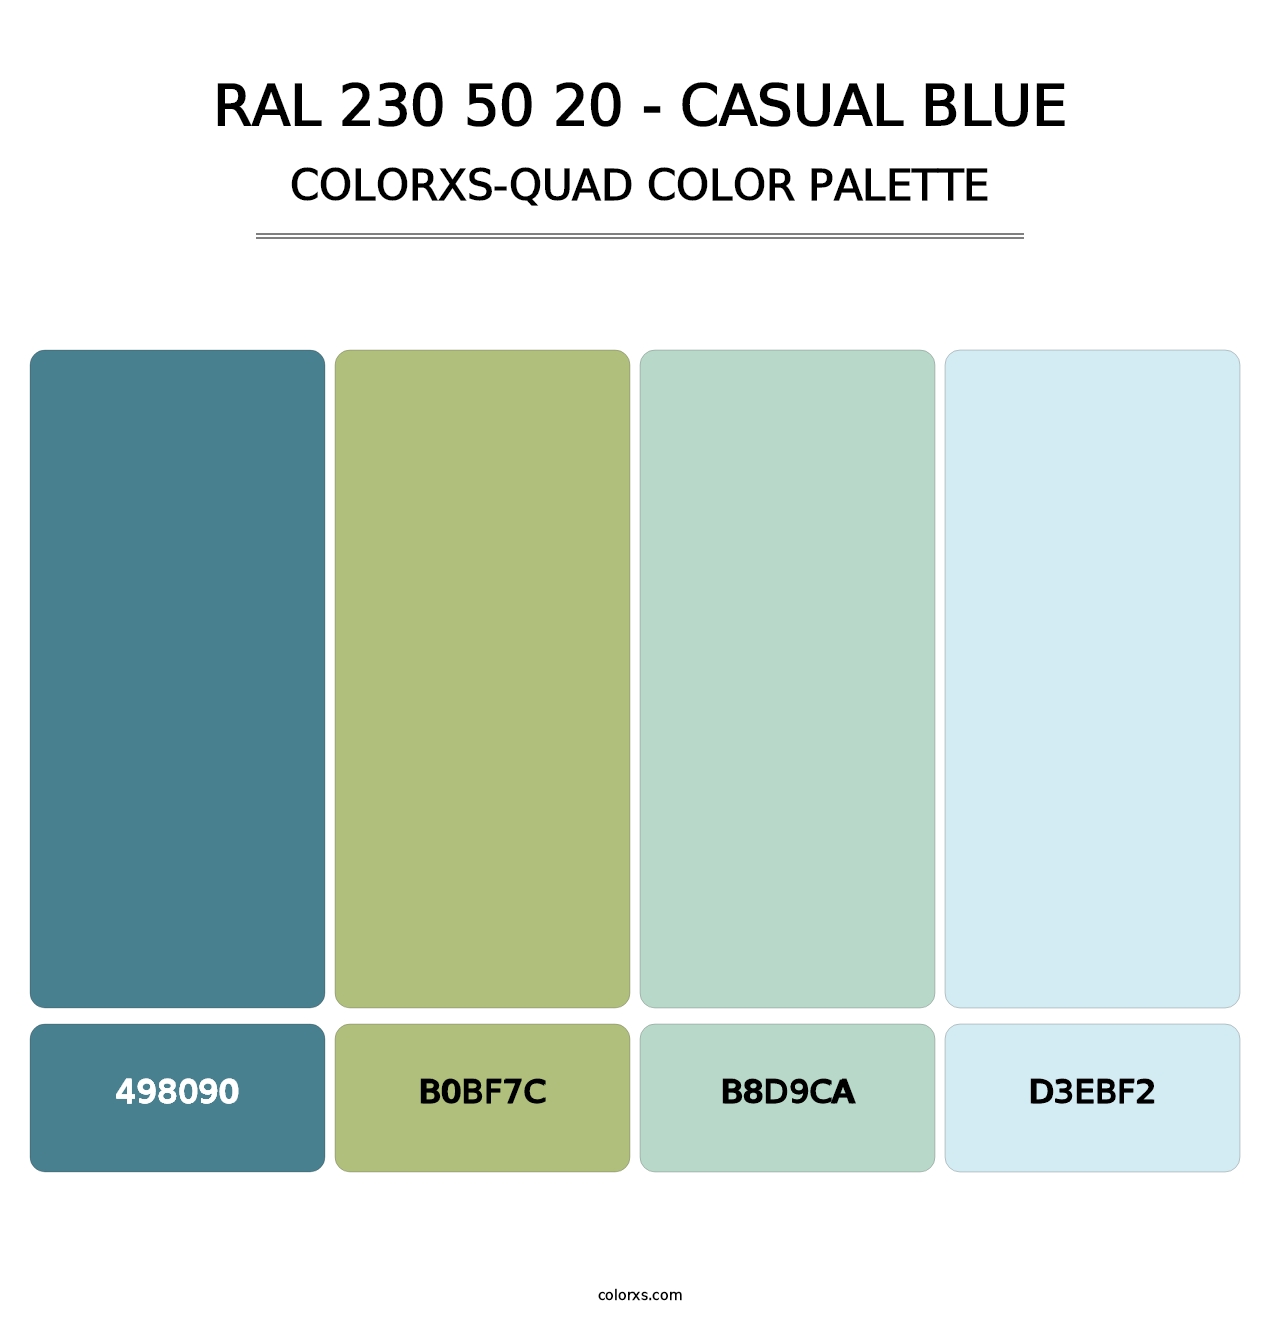 RAL 230 50 20 - Casual Blue - Colorxs Quad Palette